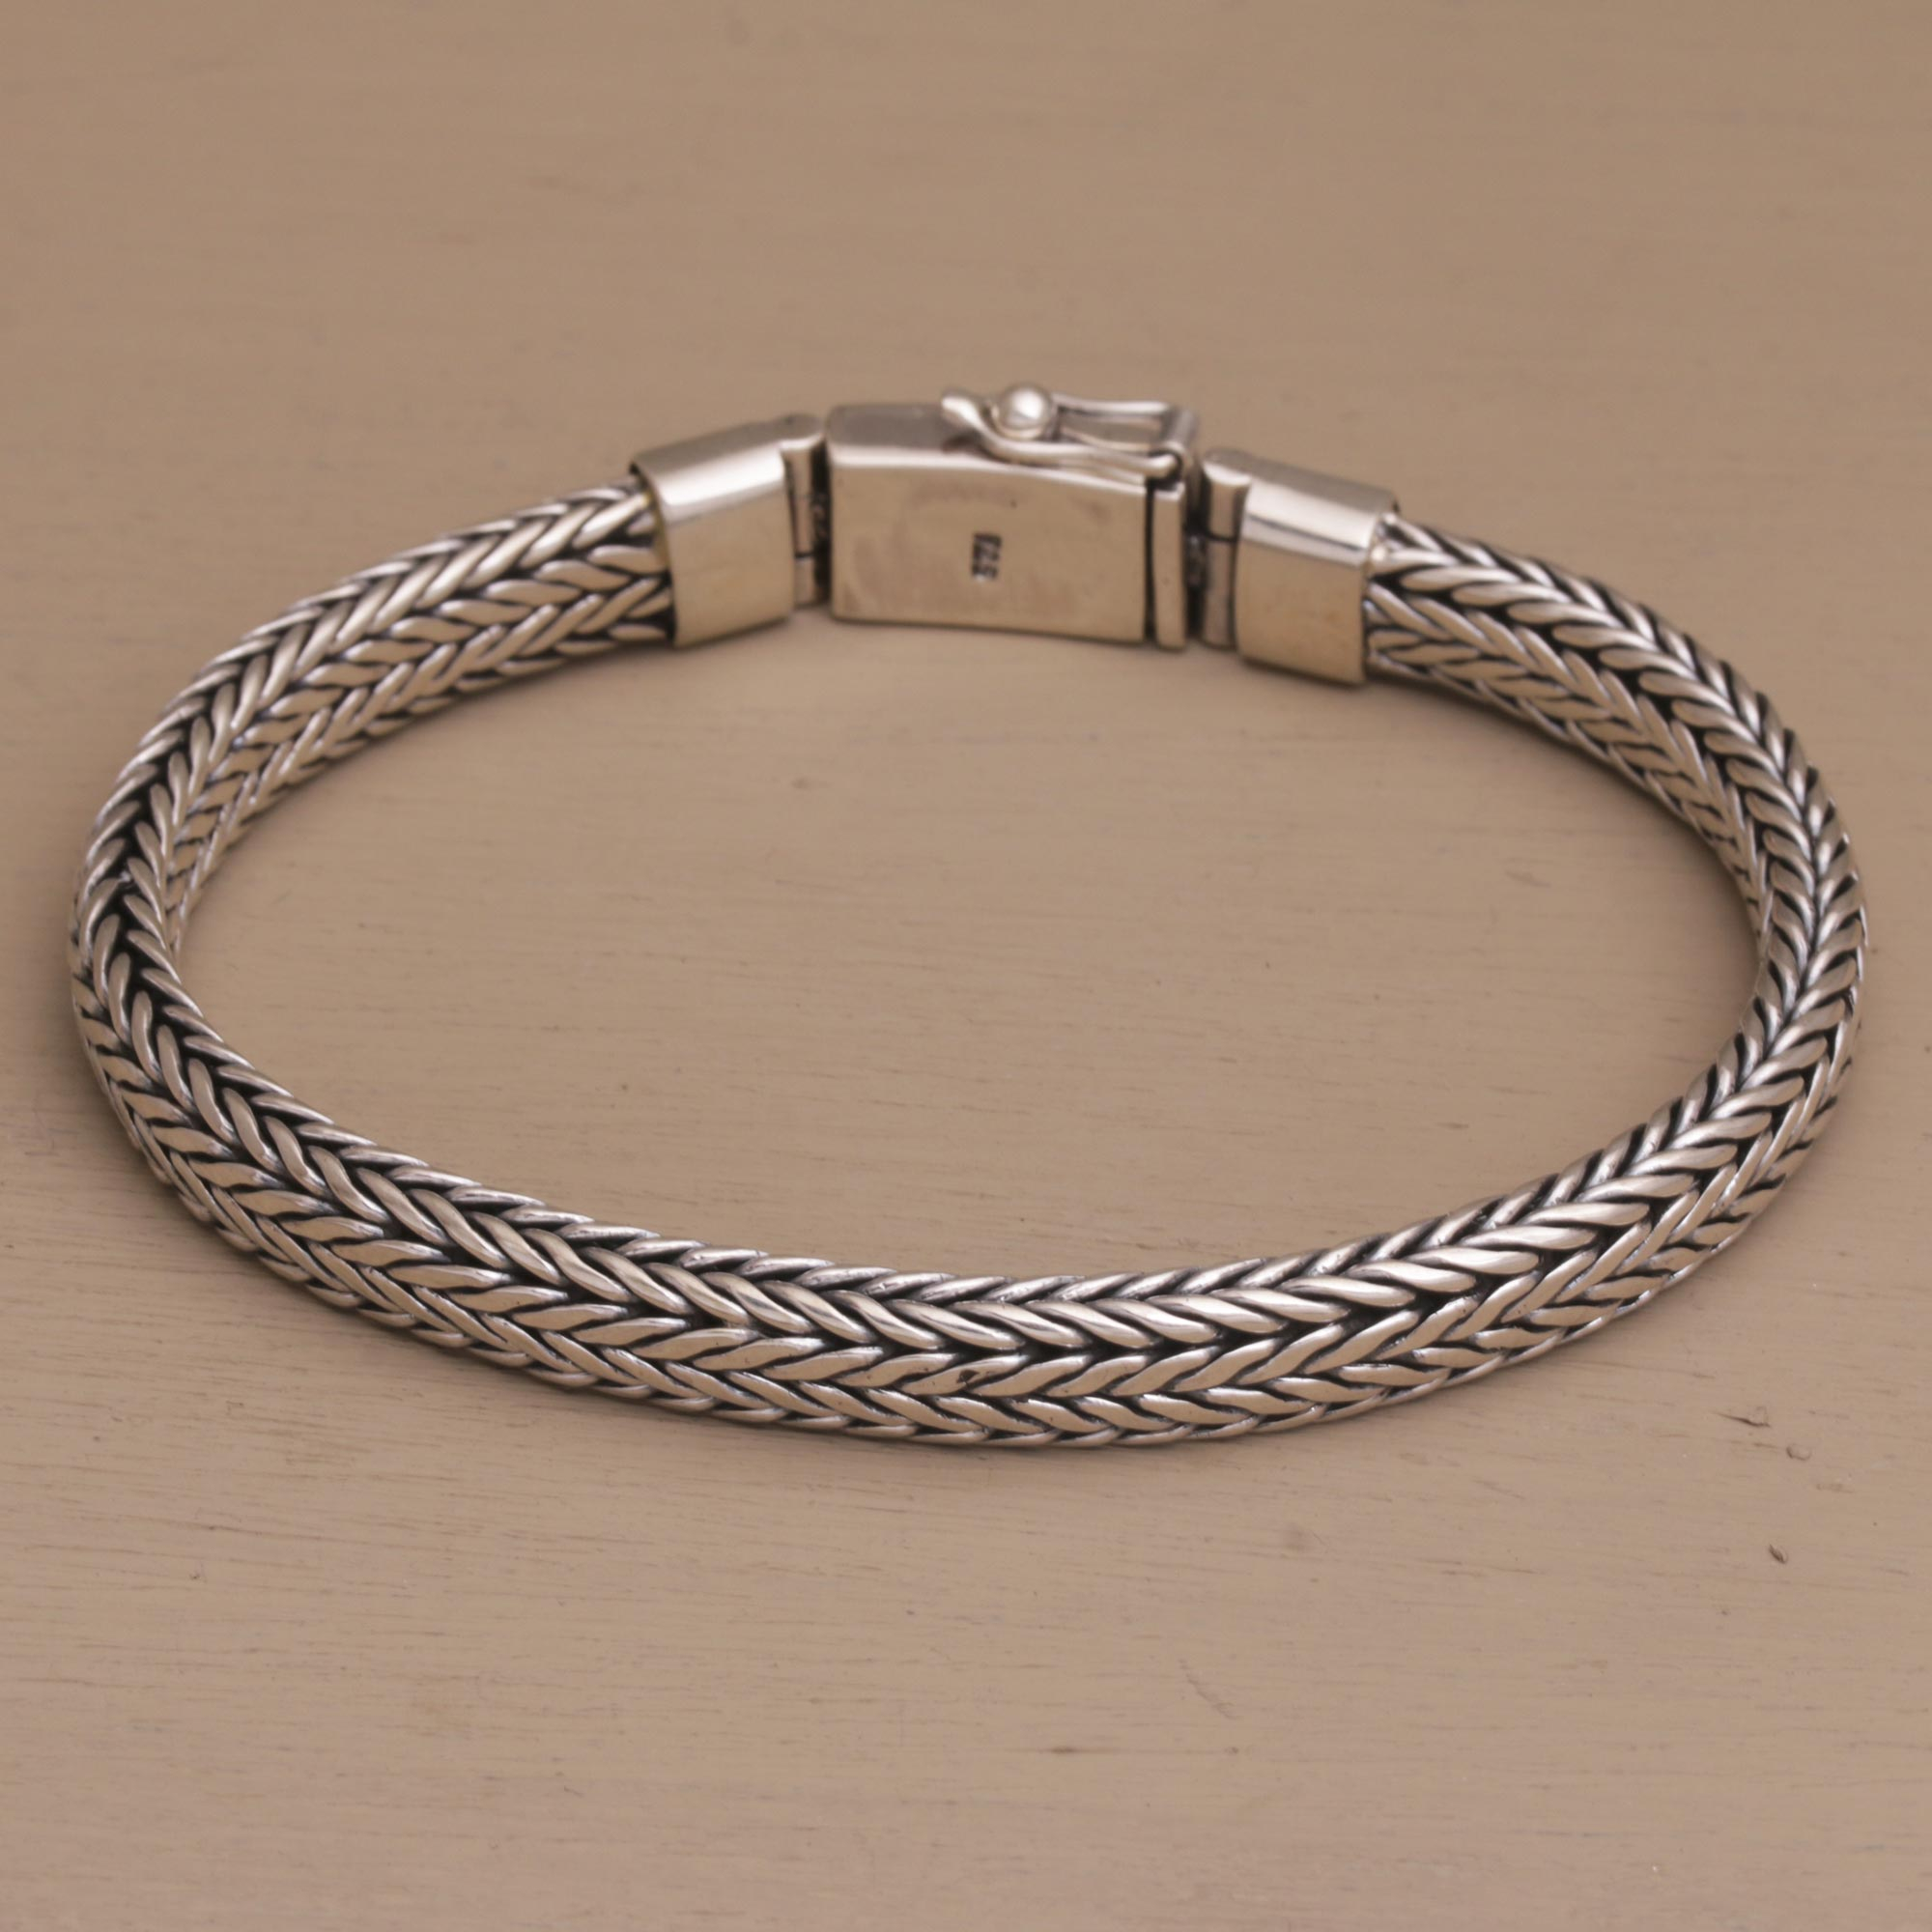 UNICEF Market | Sterling Silver Foxtail Chain Bracelet from Bali - Bali ...